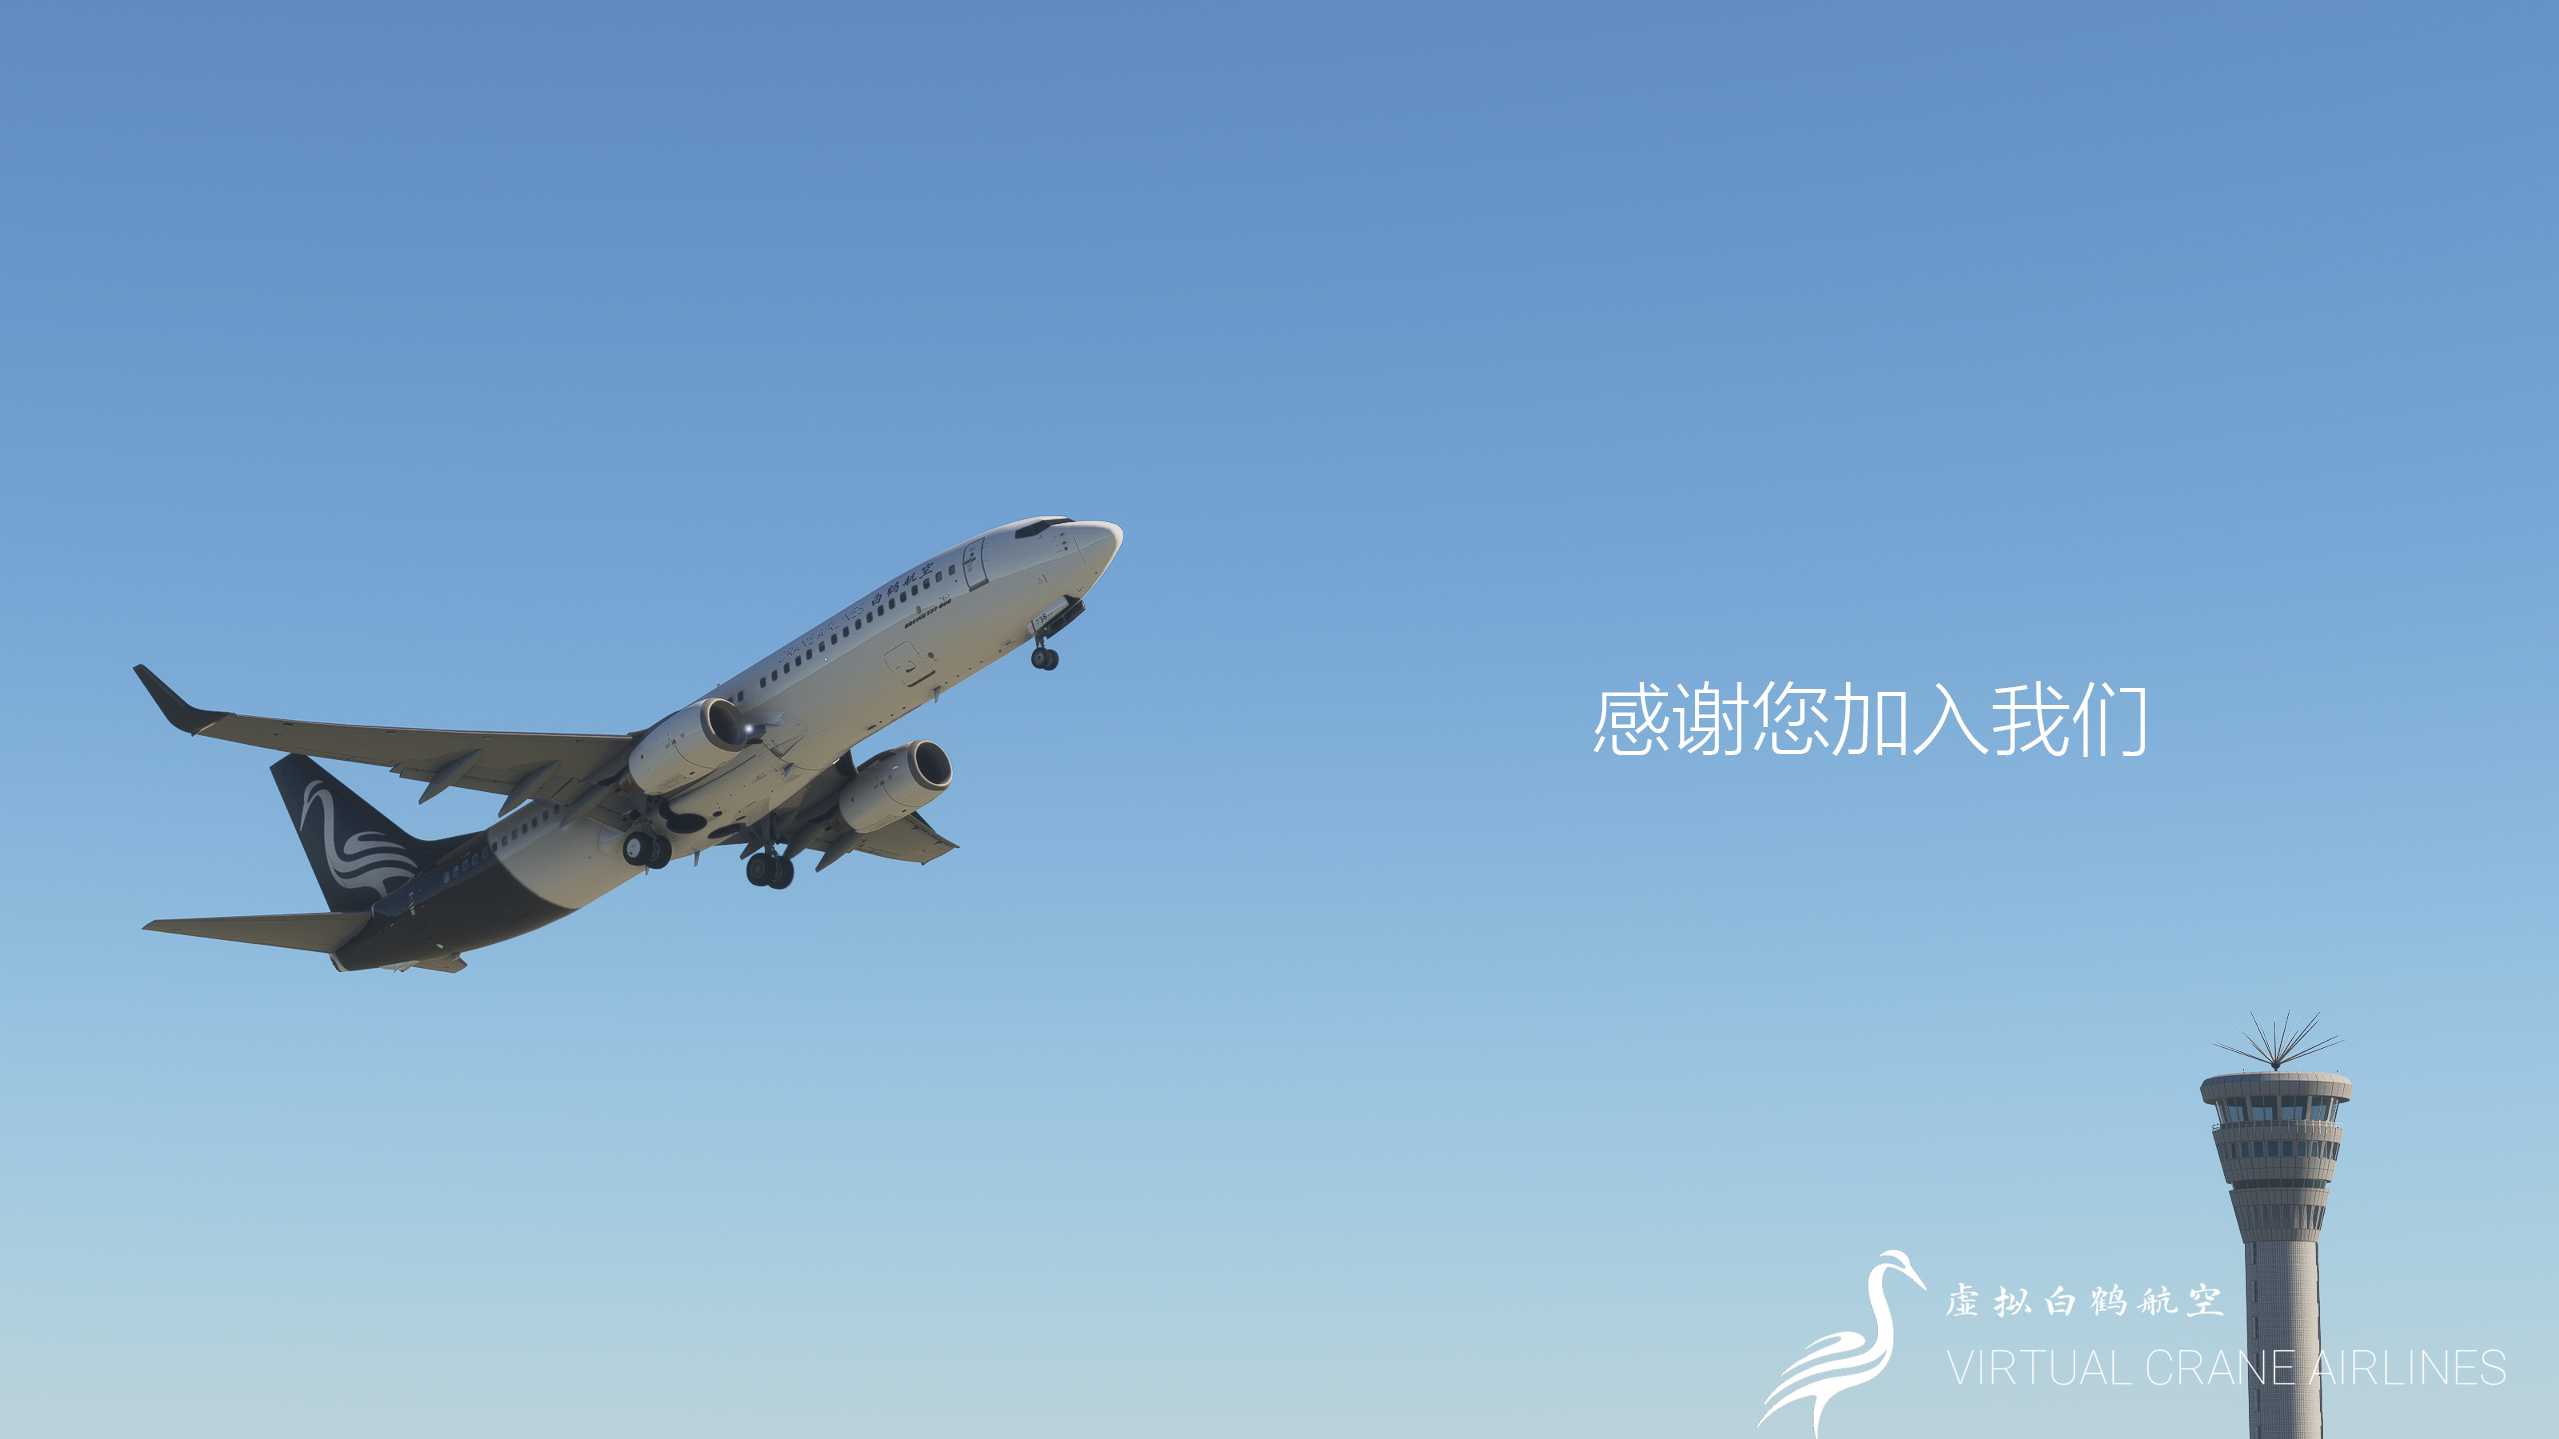 “翱翔云天，白鹤共舞”––虚拟白鹤航空-3008 